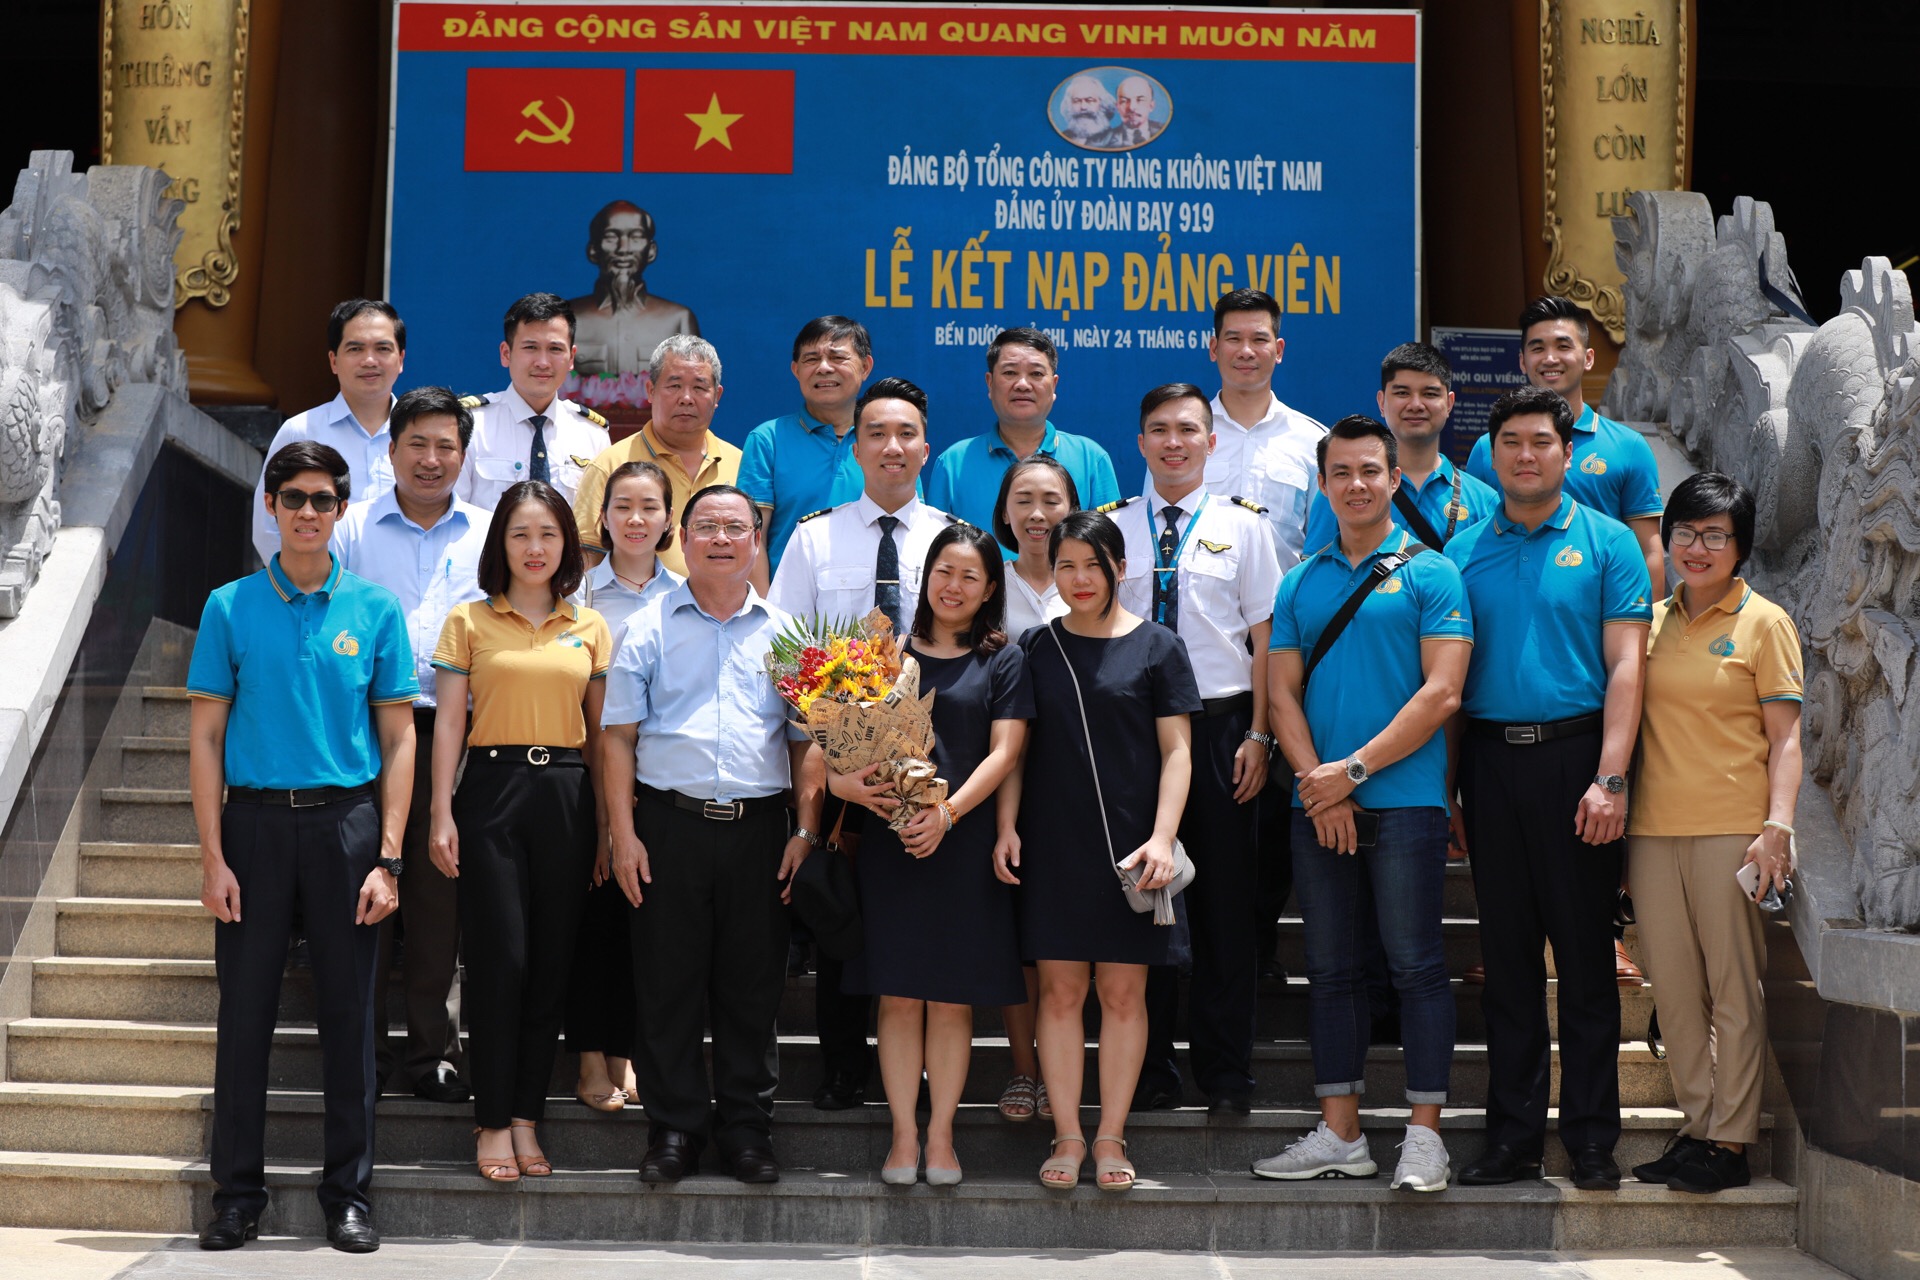 Lễ tổ chức kết nạp đảng tại Bến Dược - Củ Chi, thành phố Hồ Chí Minh có ý nghĩa quan trọng đối với các đảng viên mới